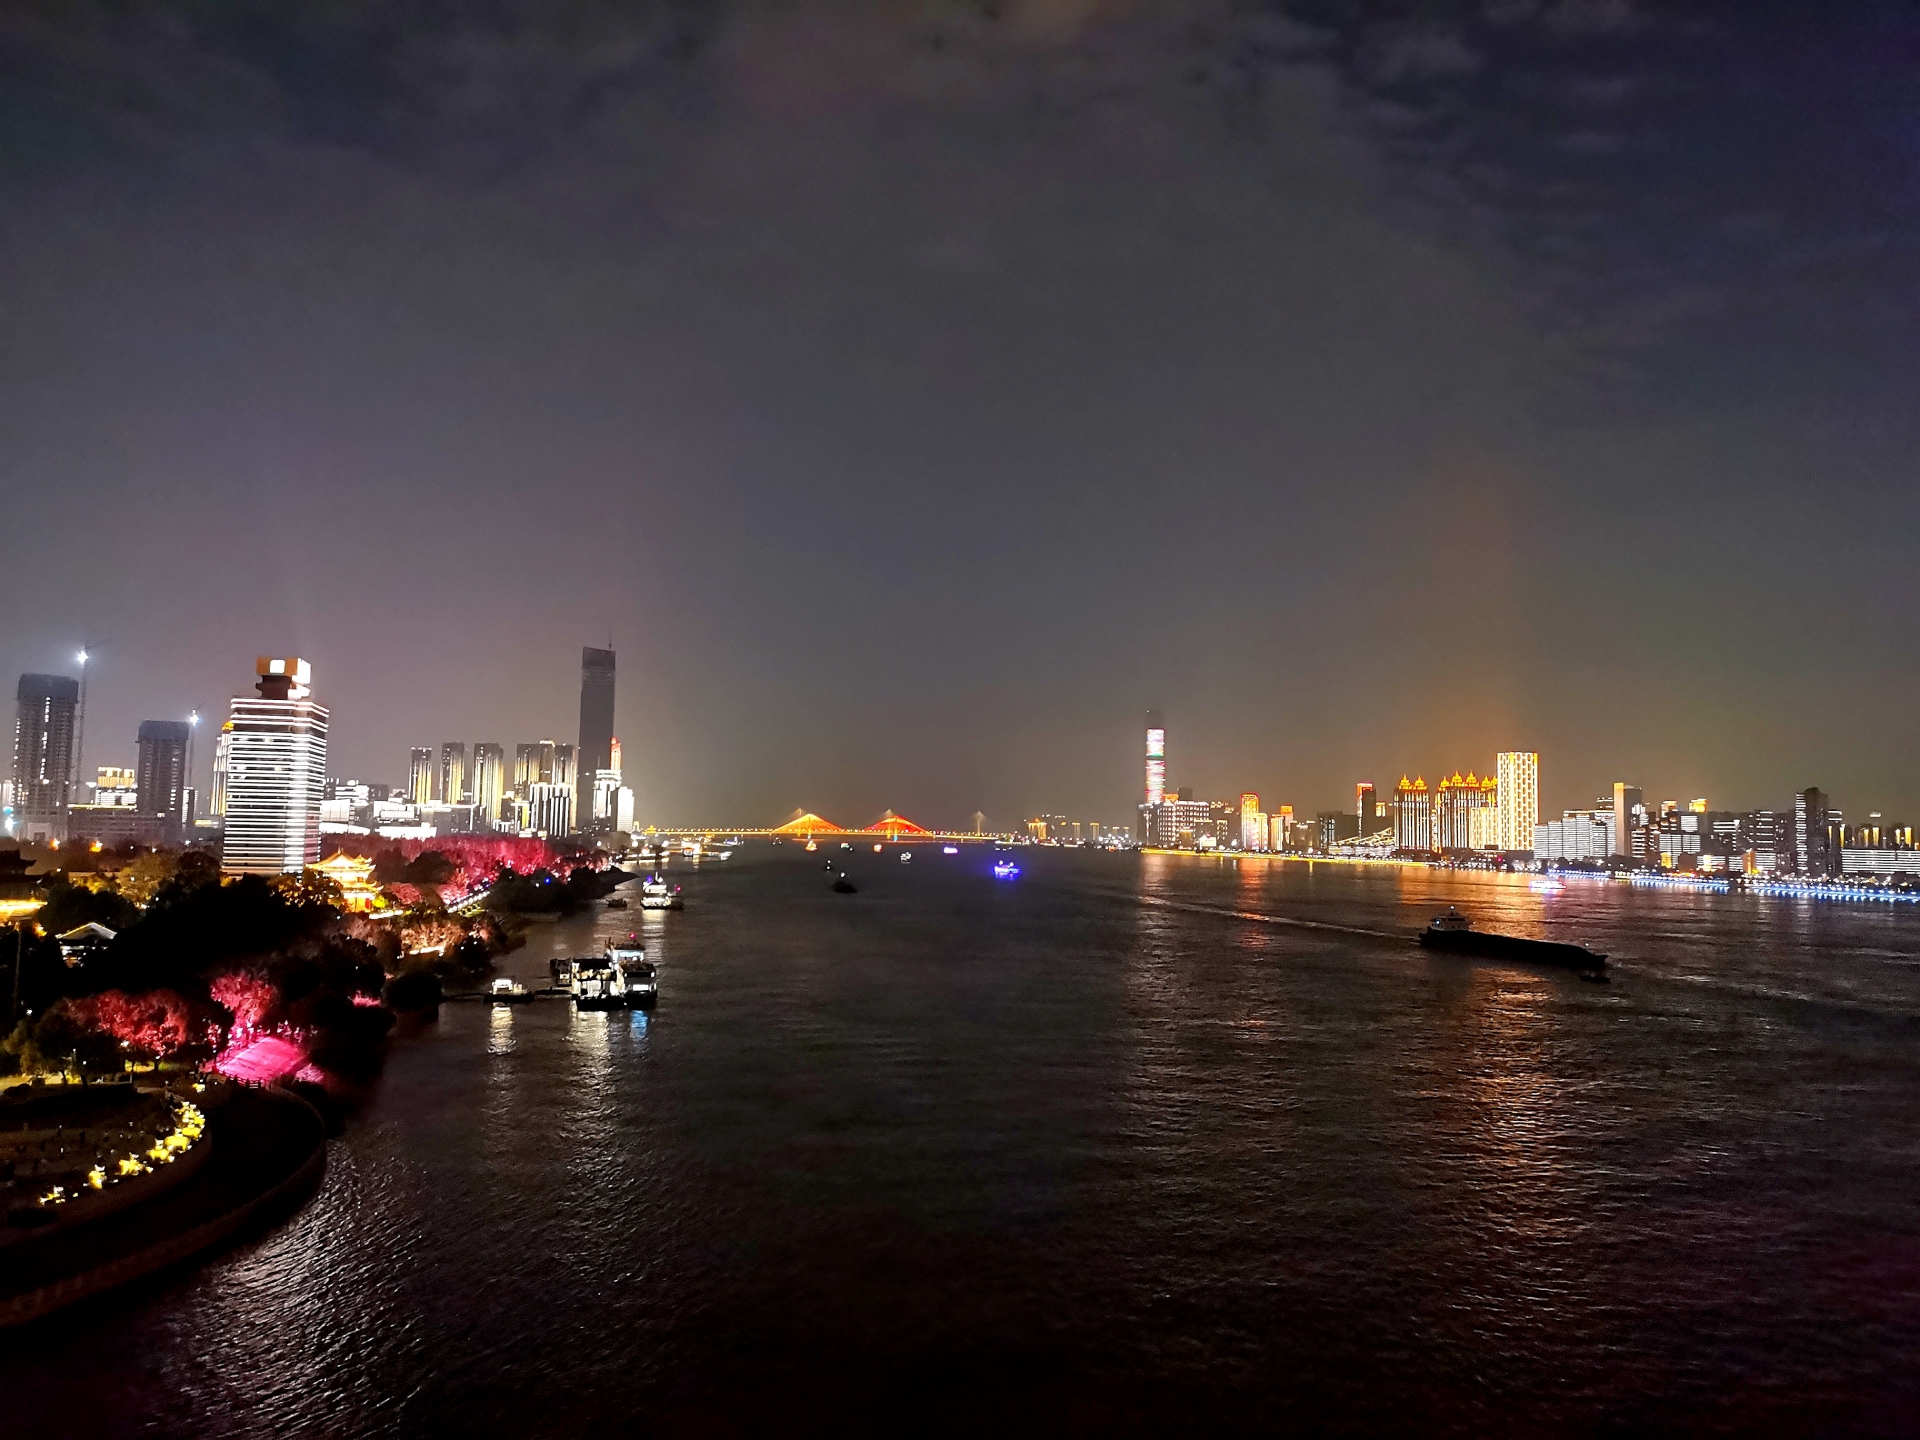 安徽芜湖市奋力打造水清岸绿“智慧长江” 推动长江经济带高质量发展